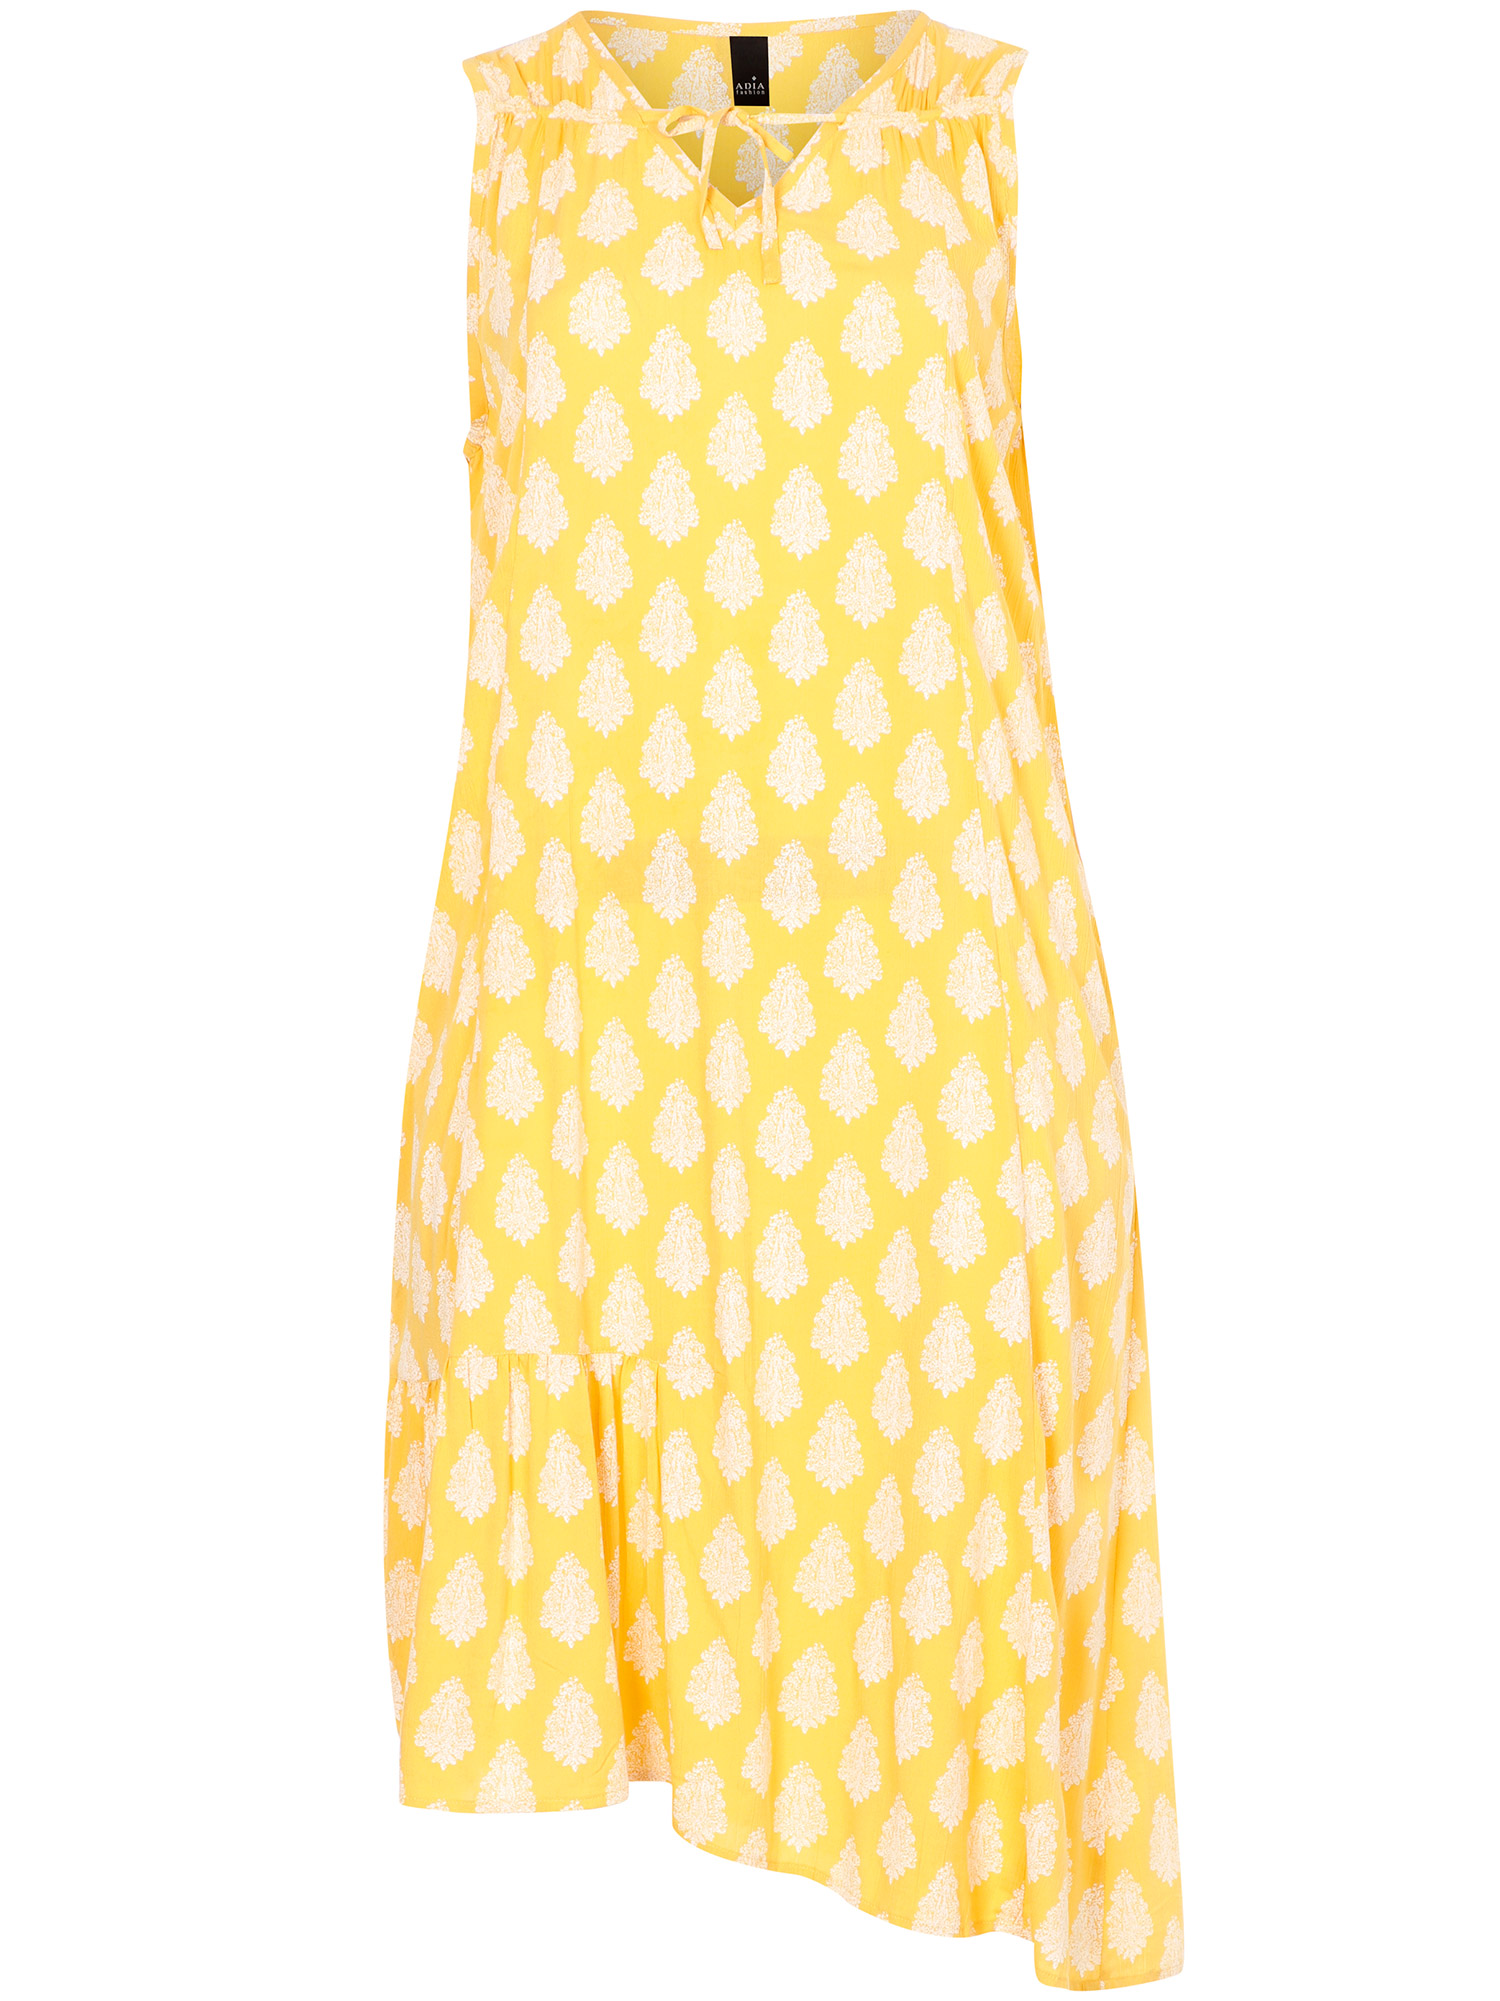 Flott gul viskose kjole med hvitt print fra Adia